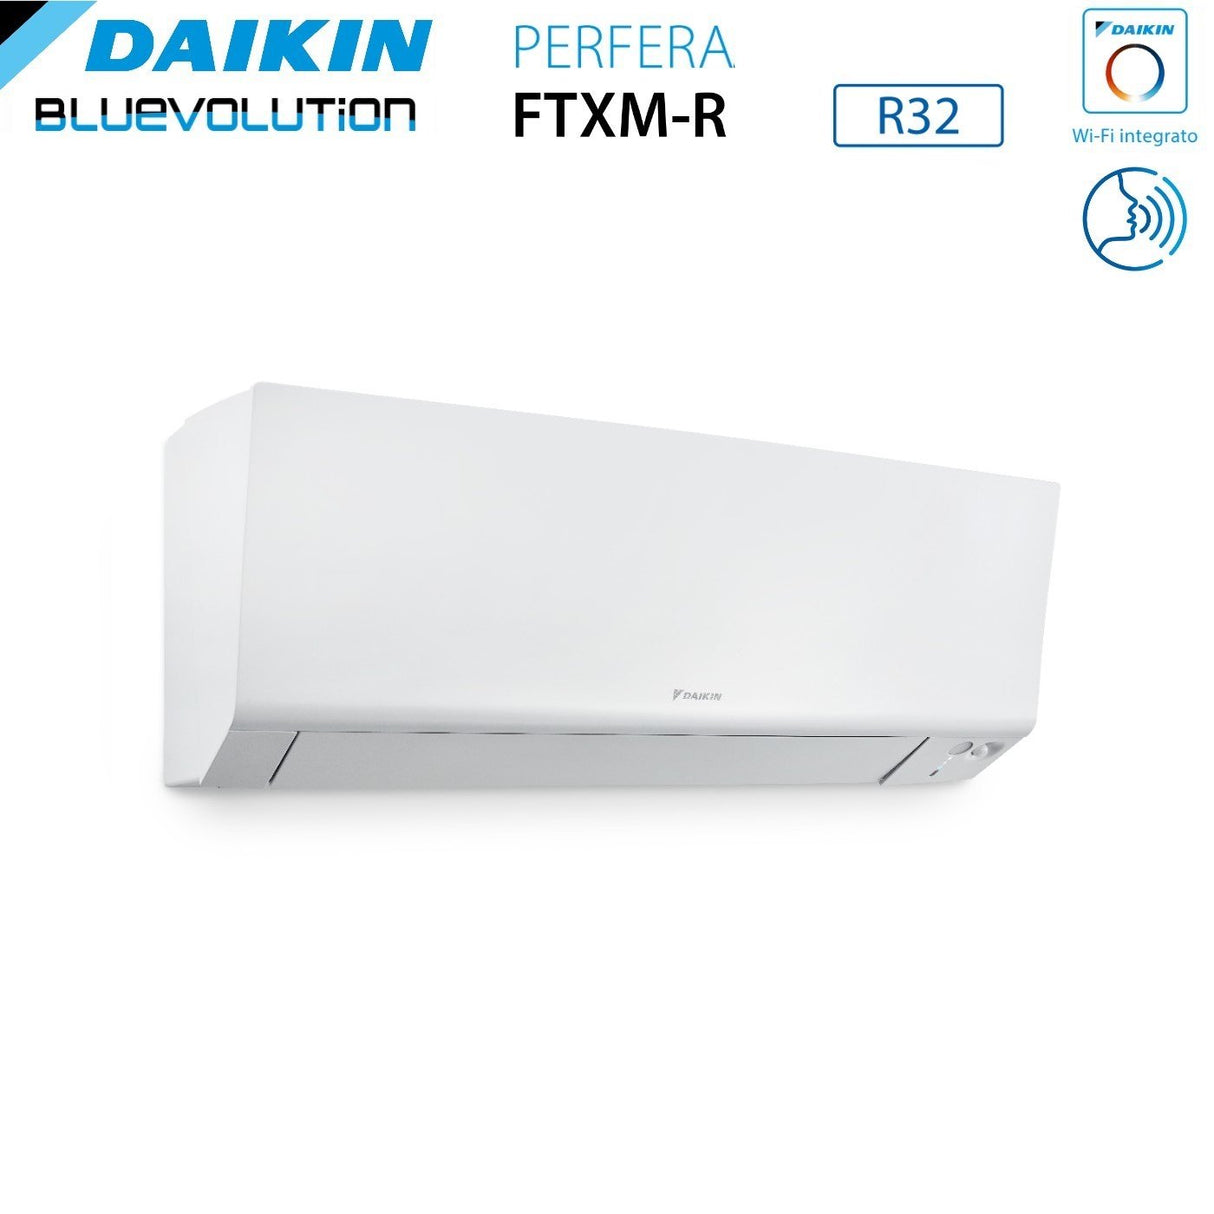 immagine-4-daikin-climatizzatore-condizionatore-daikin-bluevolution-quadri-split-inverter-serie-ftxmr-perfera-wall-99912-con-4mxm80a-r-32-wi-fi-integrato-90009000900012000-garanzia-italiana